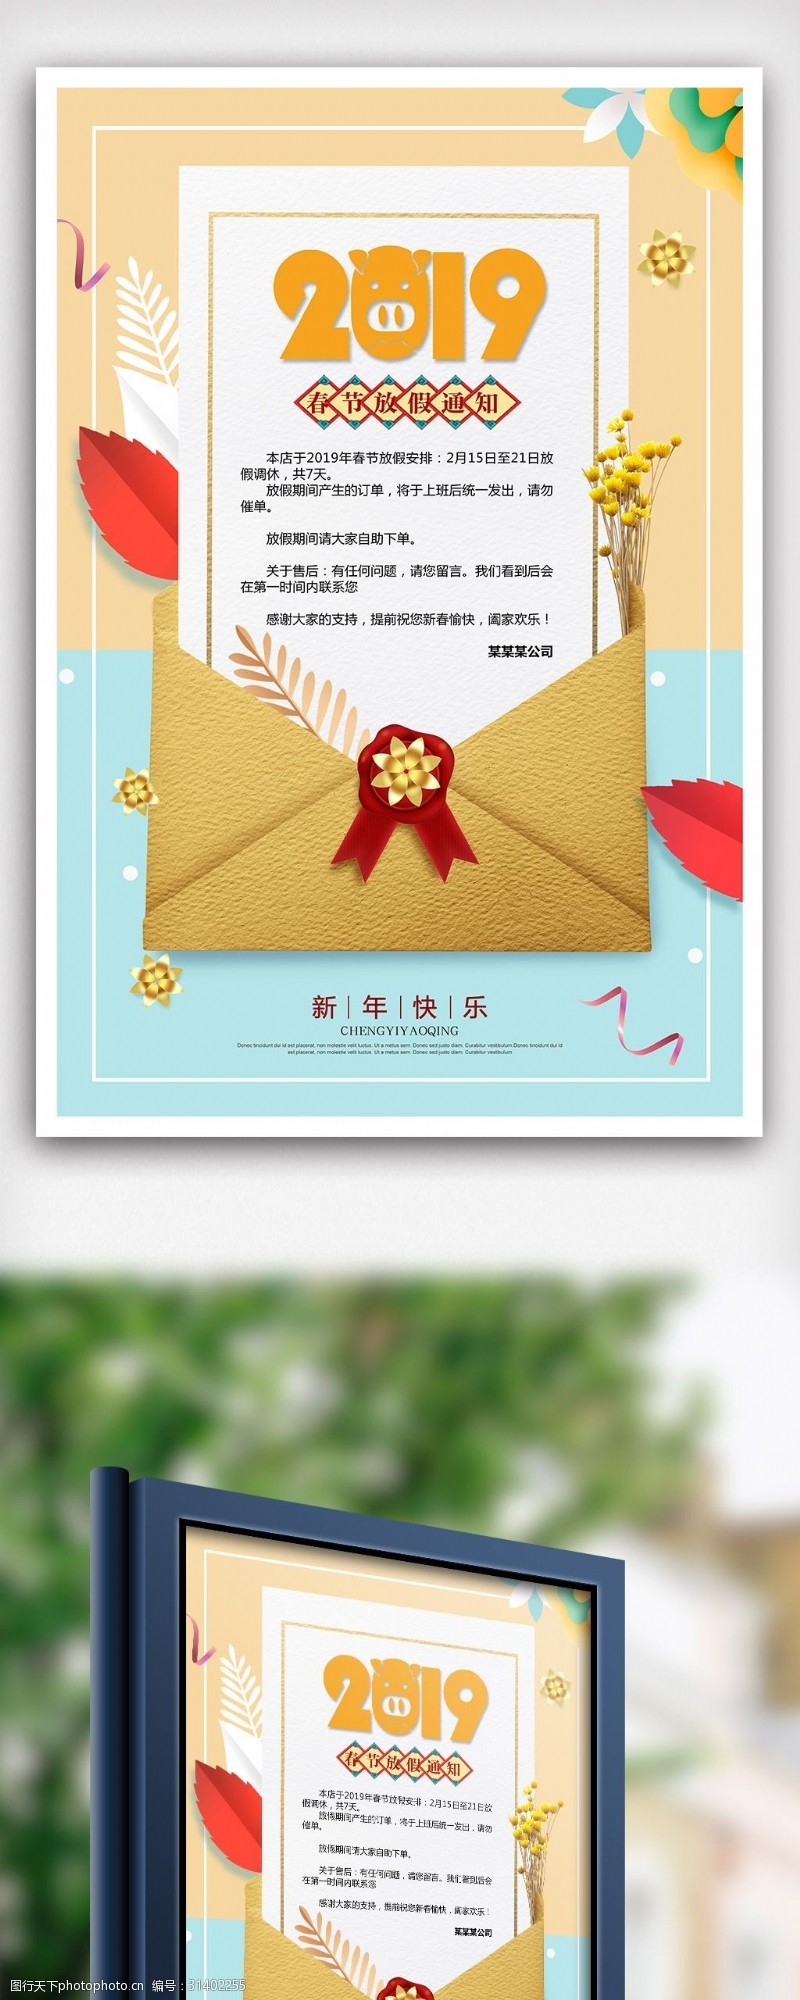 新年素材图片下载2019猪年新春放假通知海报设计